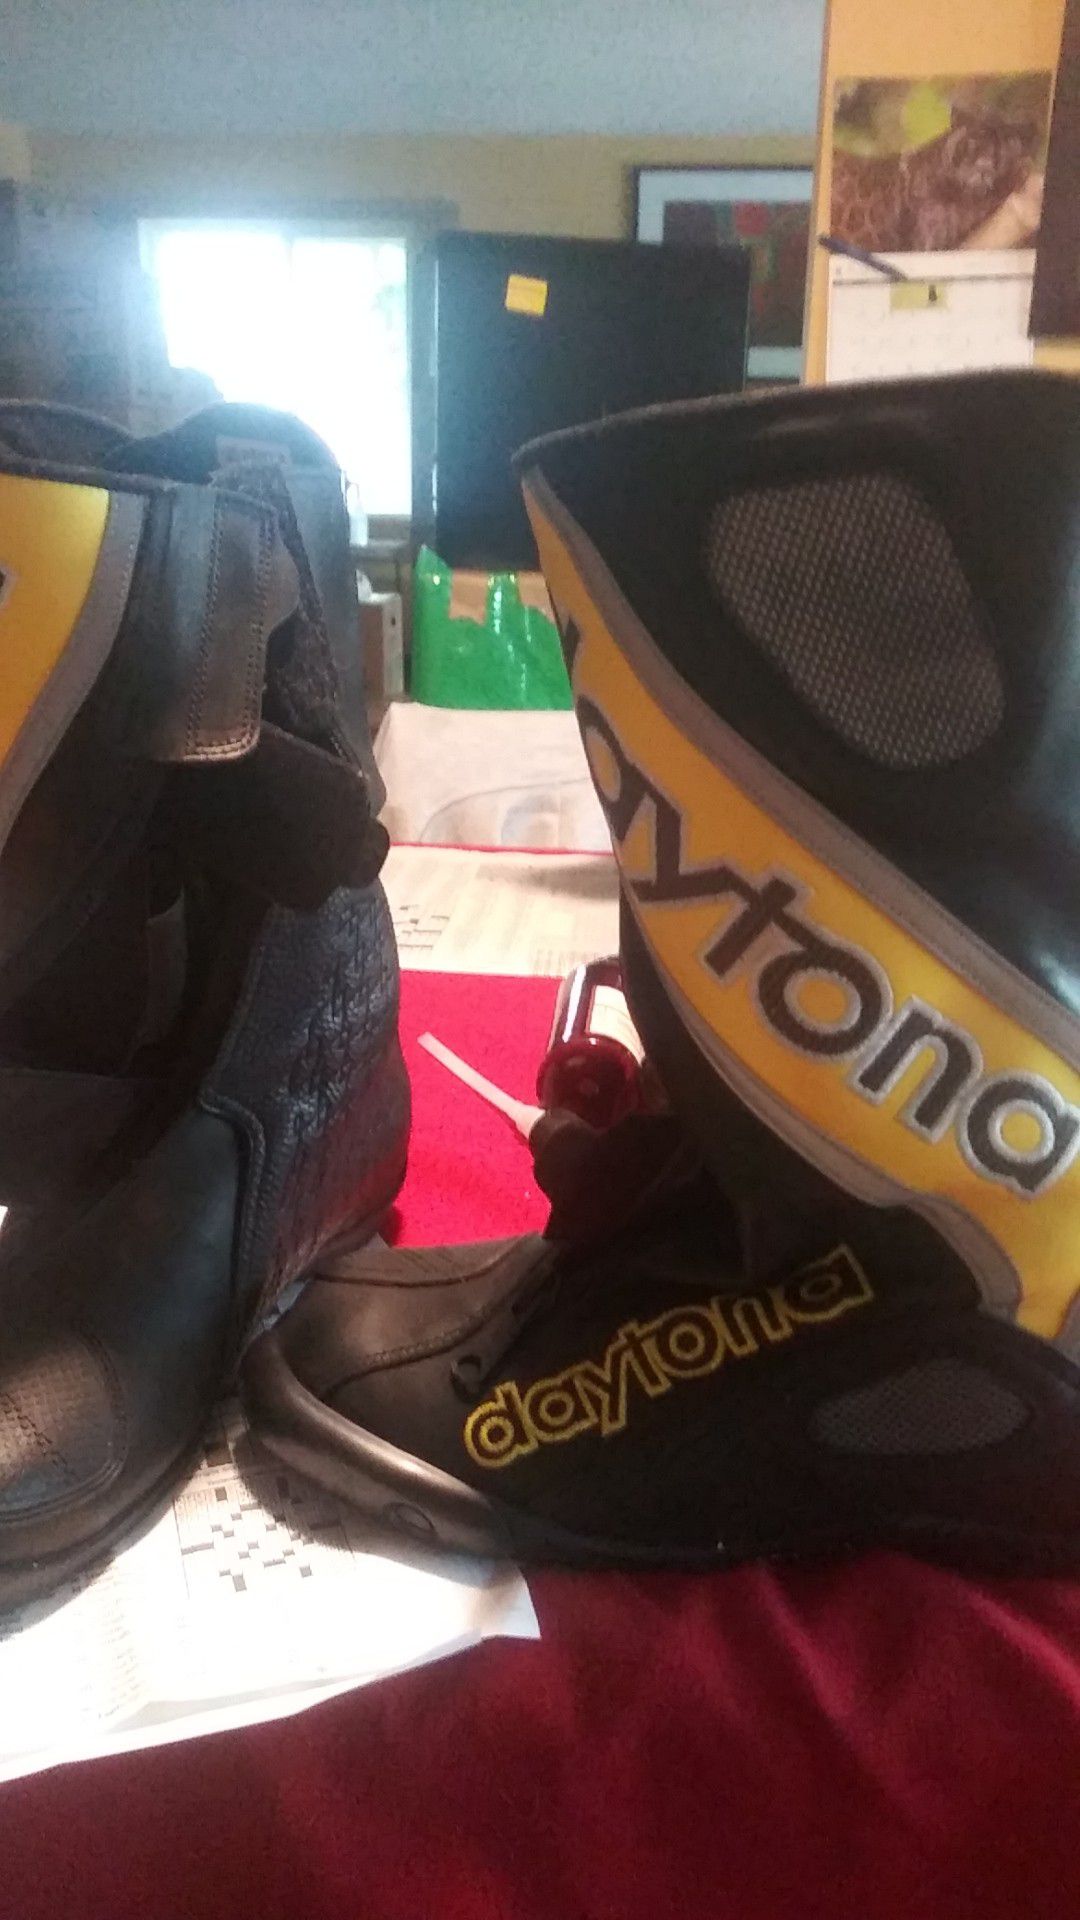 Motorcycle boots Daytona New size 40 Euro